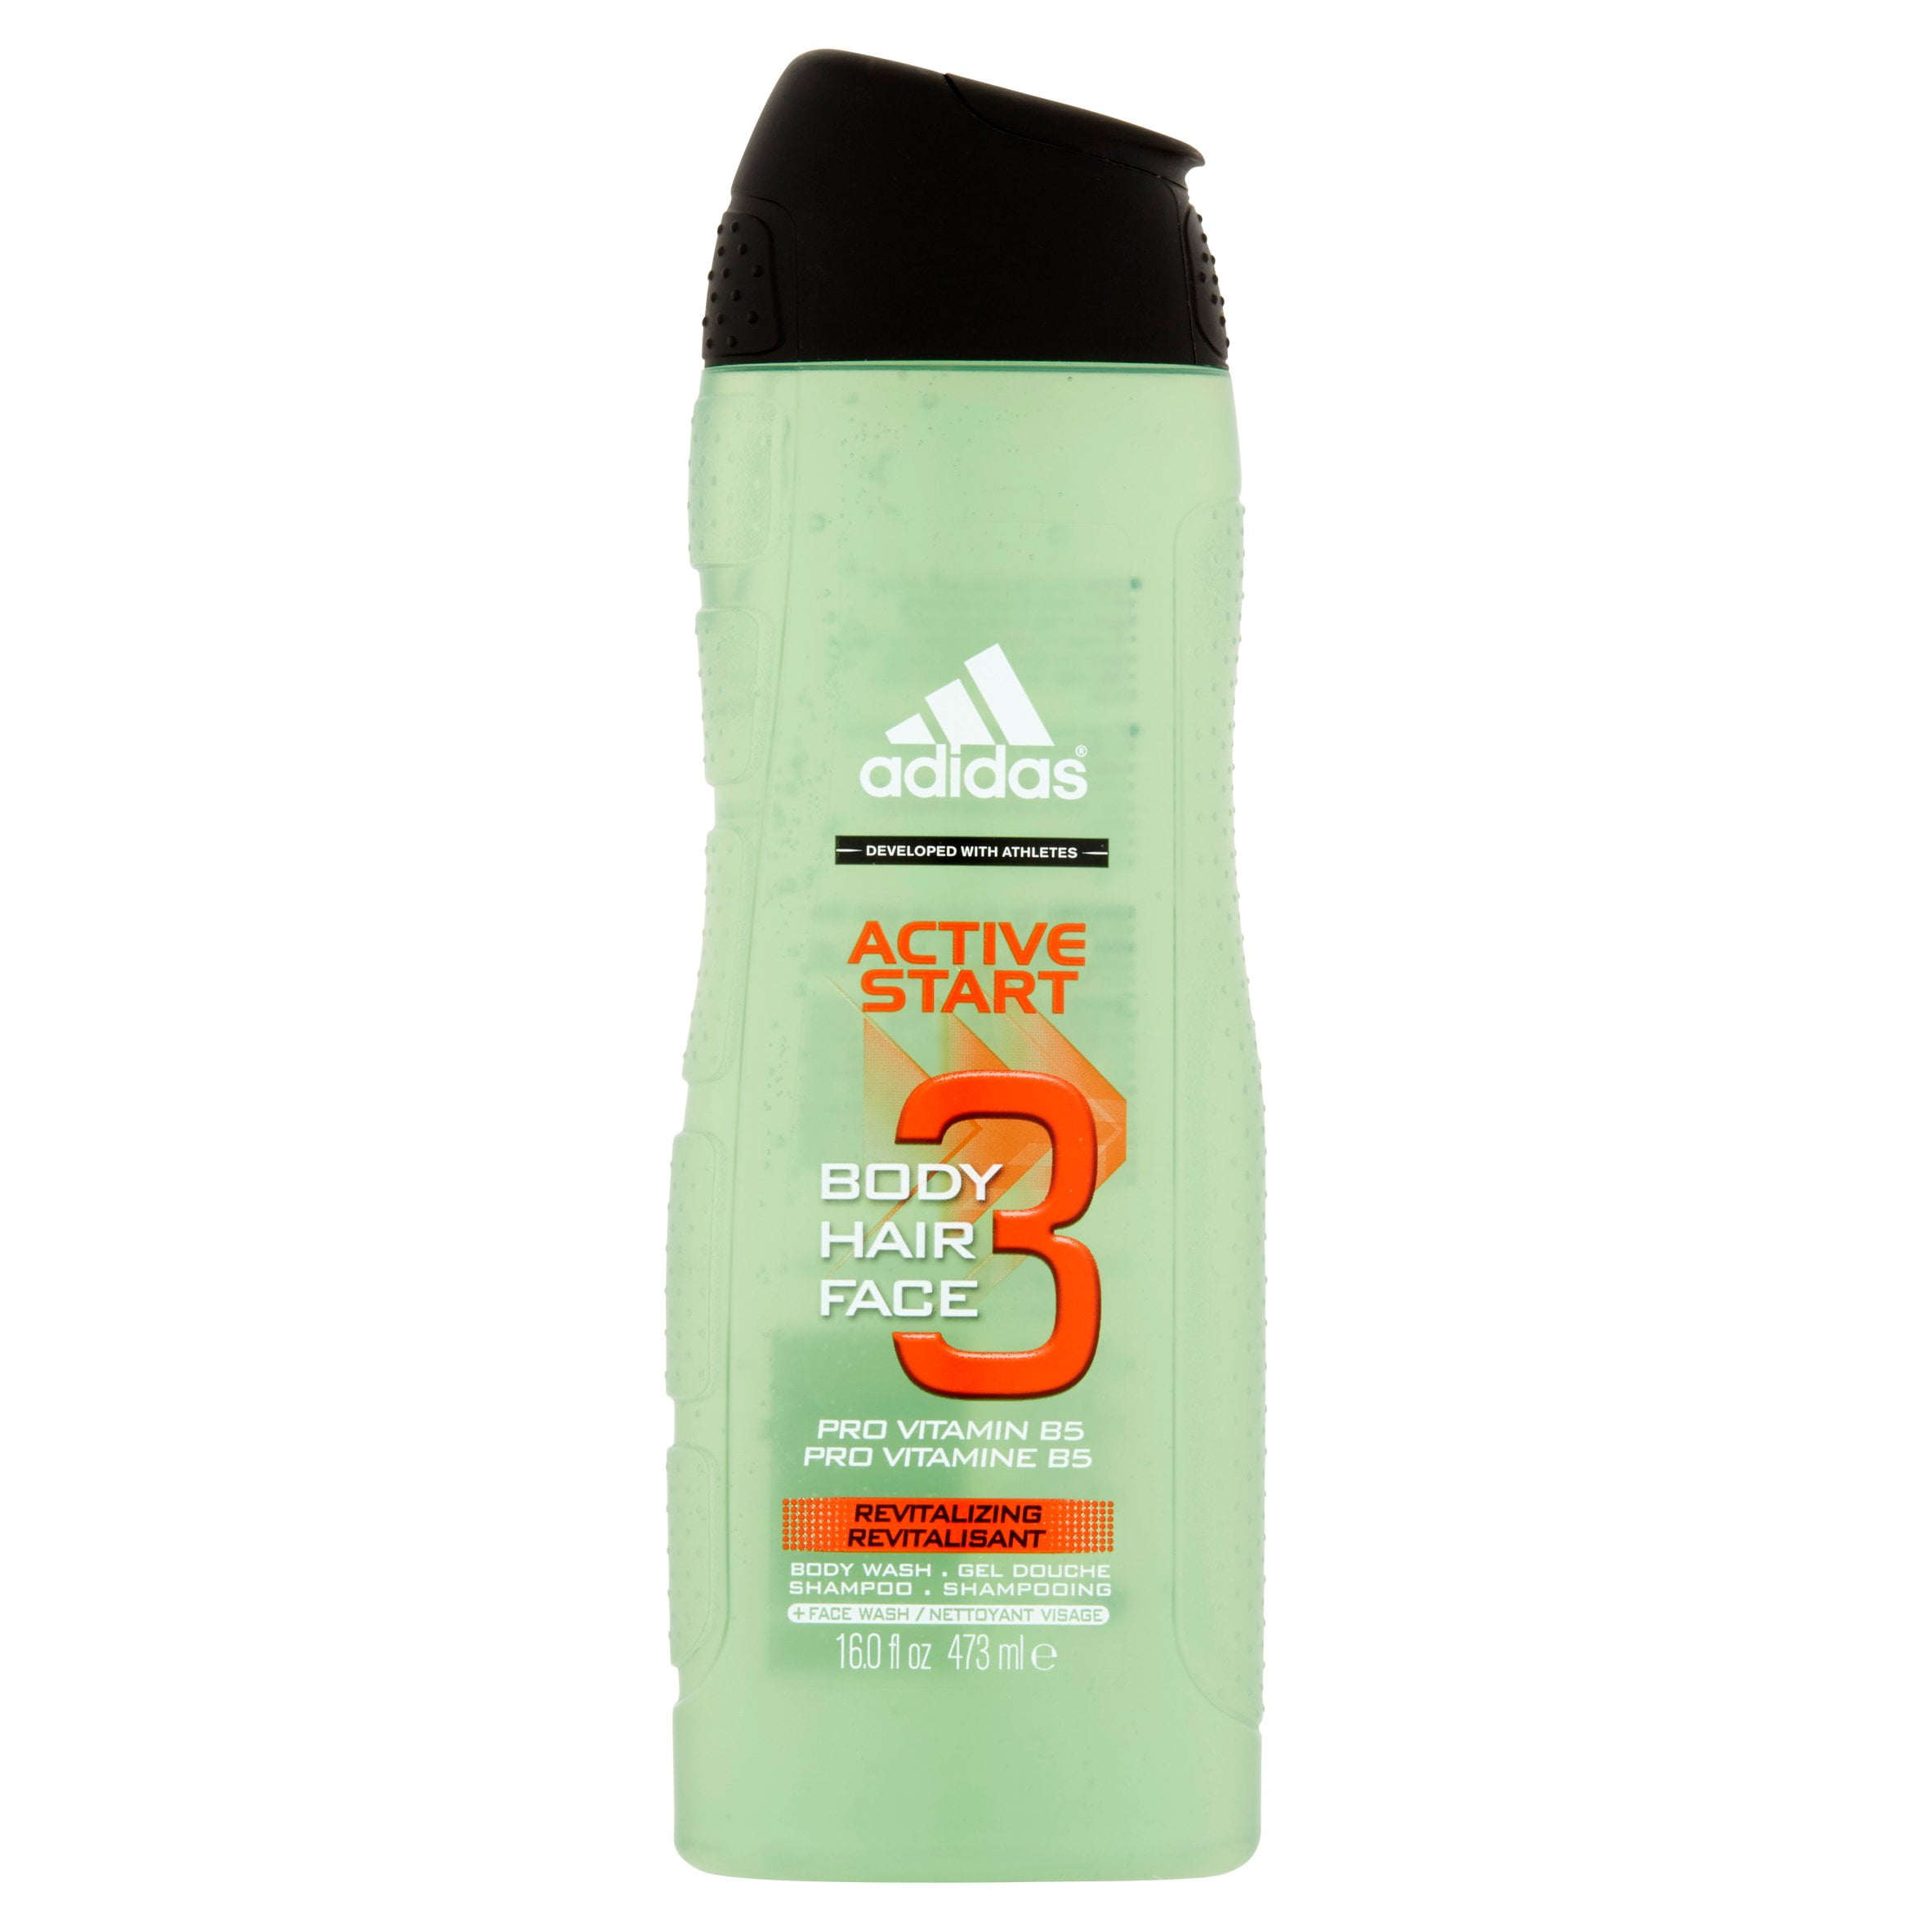 adidas 24 hour deodorant 3 oz